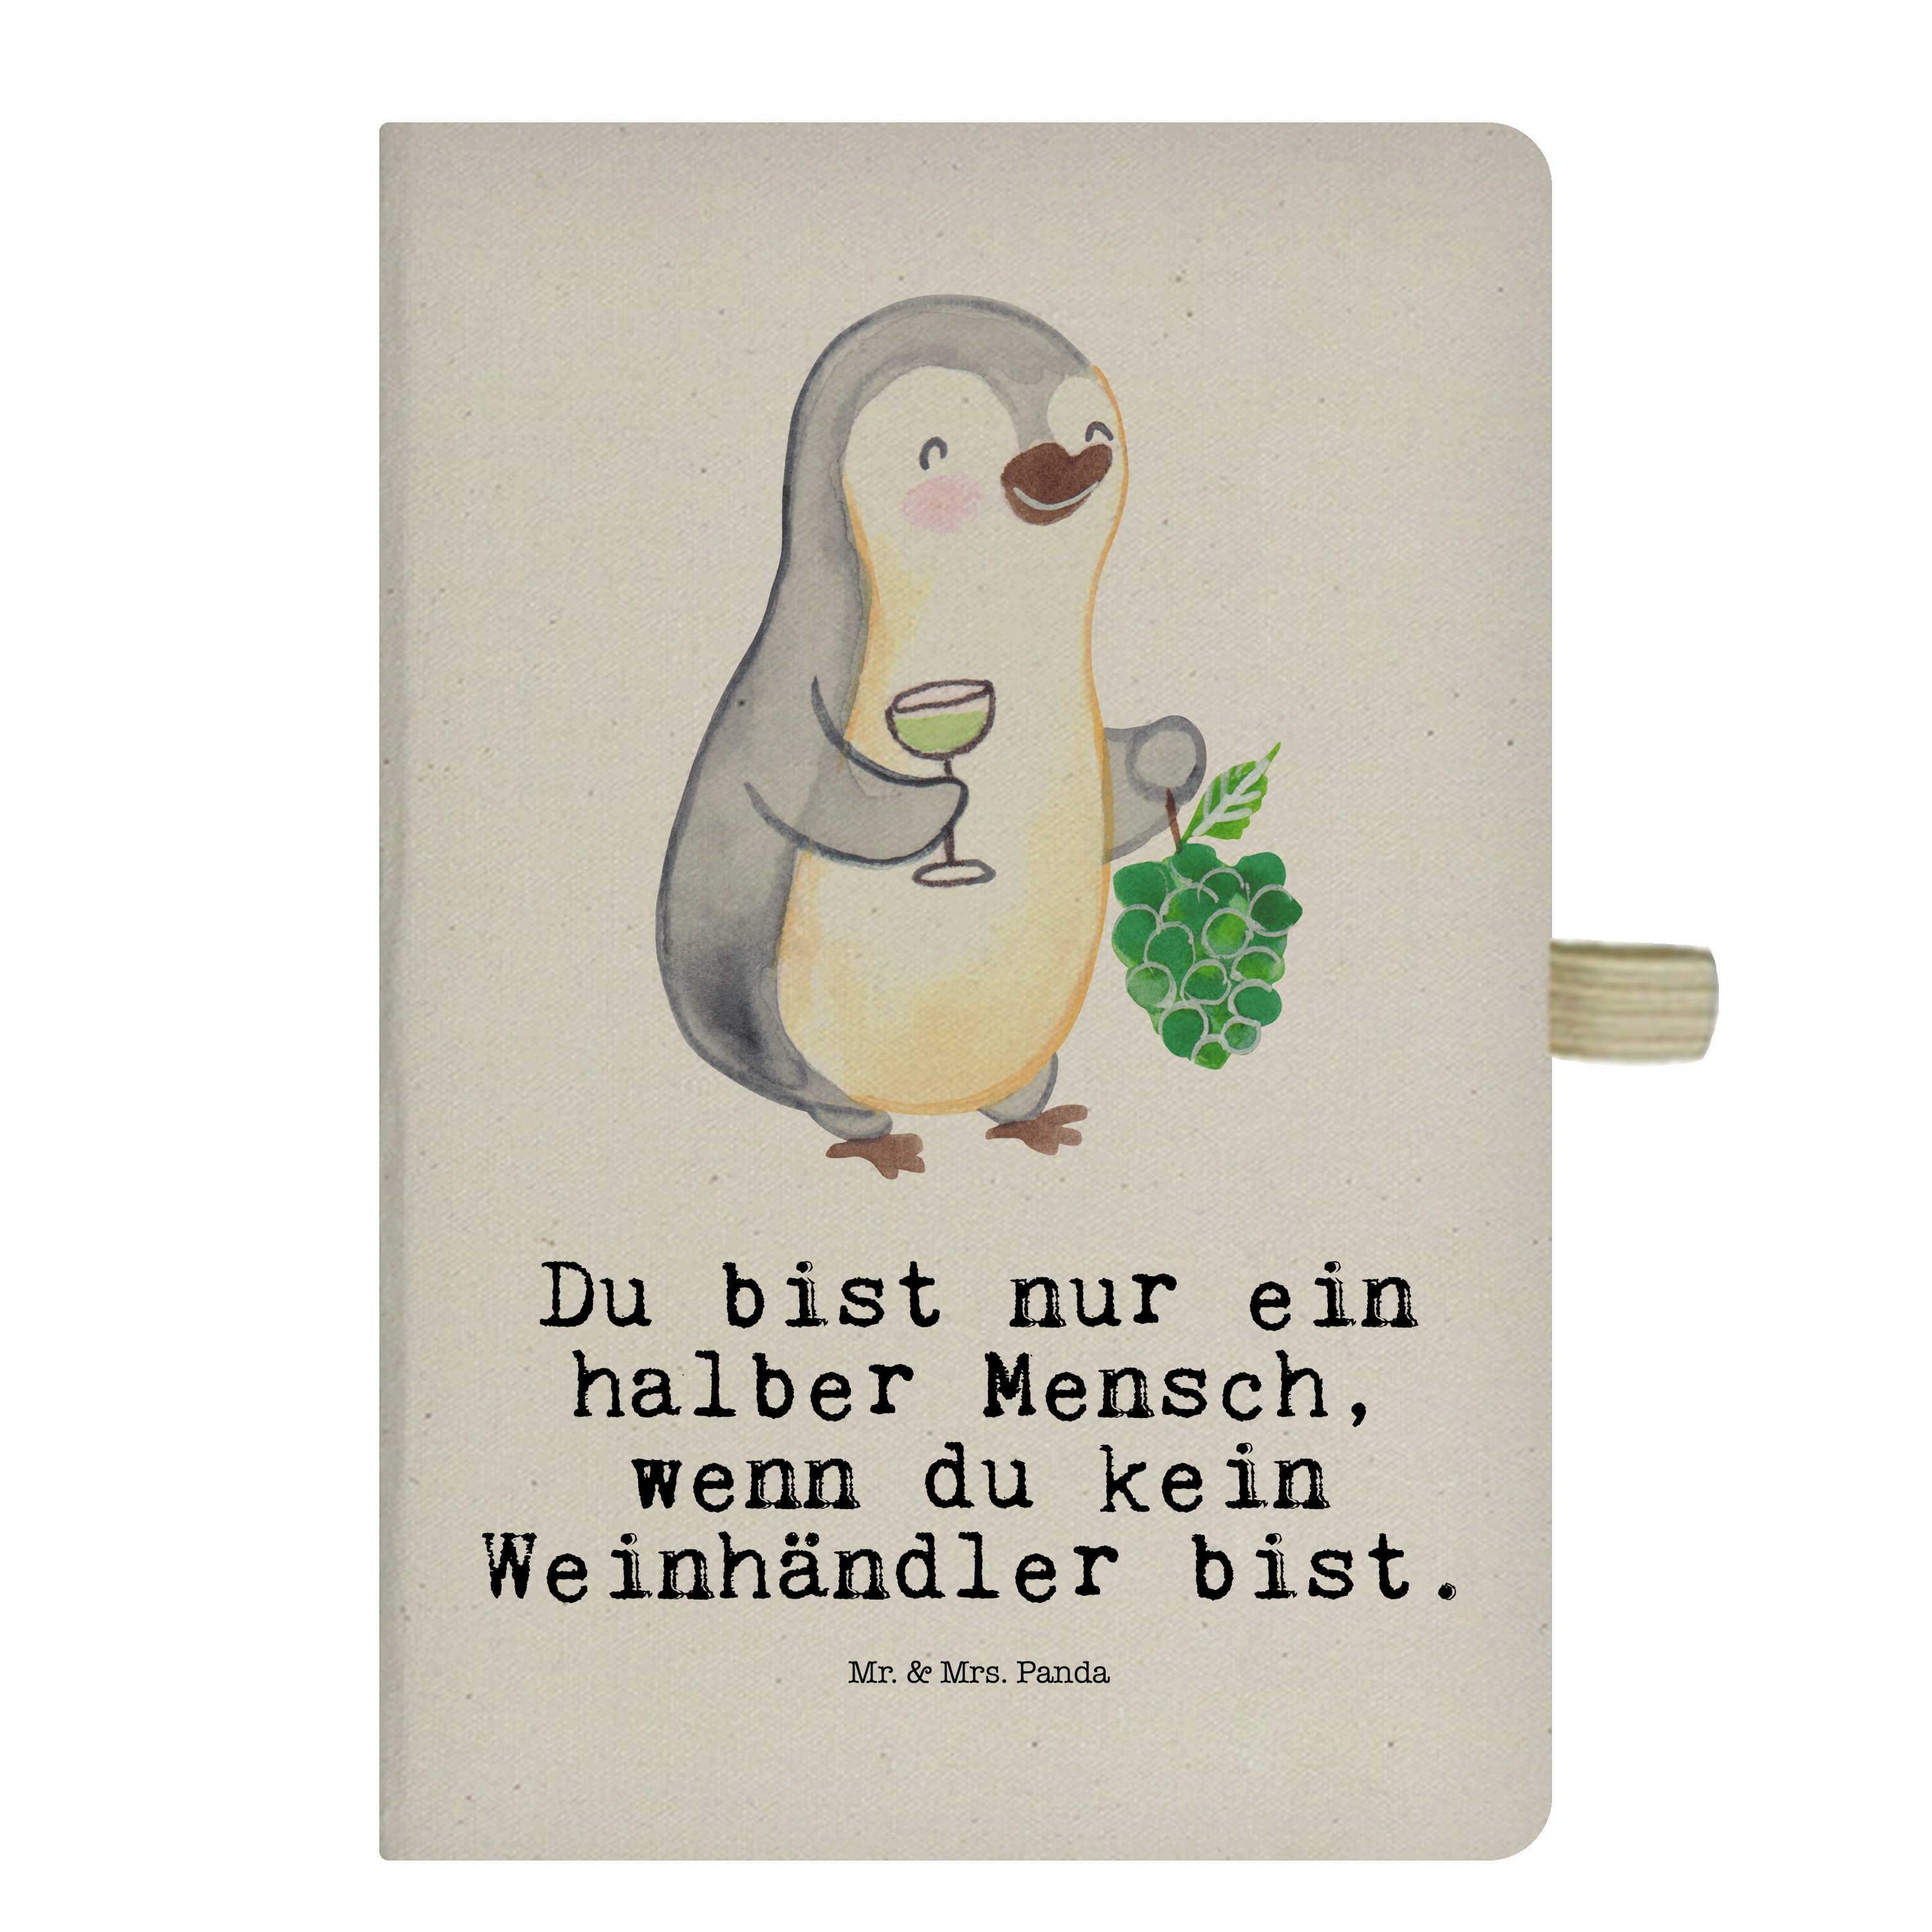 Mrs. - Mrs. - Mr. mit Skizzenbuch, Notizbuch & Panda Mr. Schenken, Transparent & Geschenk, Herz Weinhändler Panda